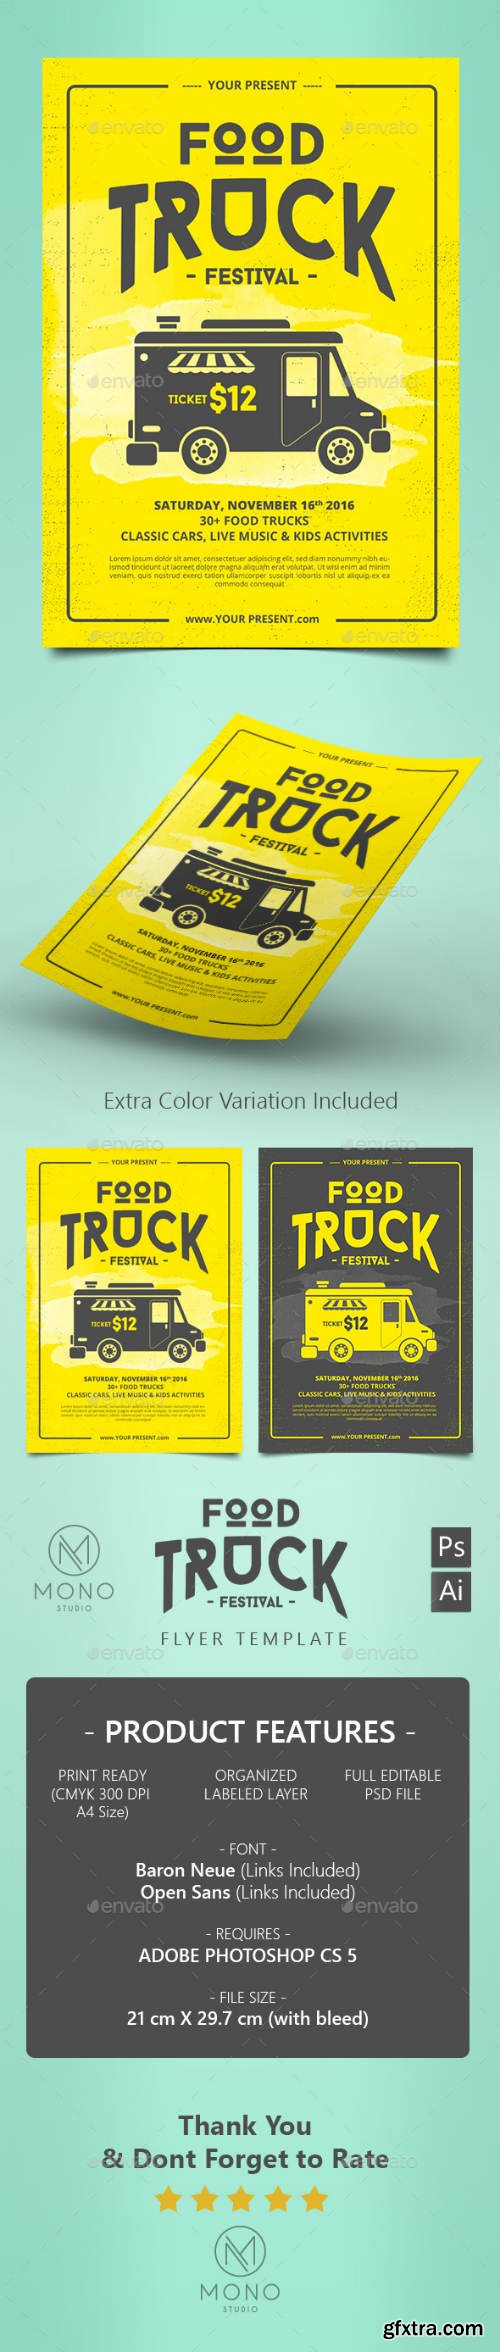 GR - Food Truck Flyer / Poster 16216342